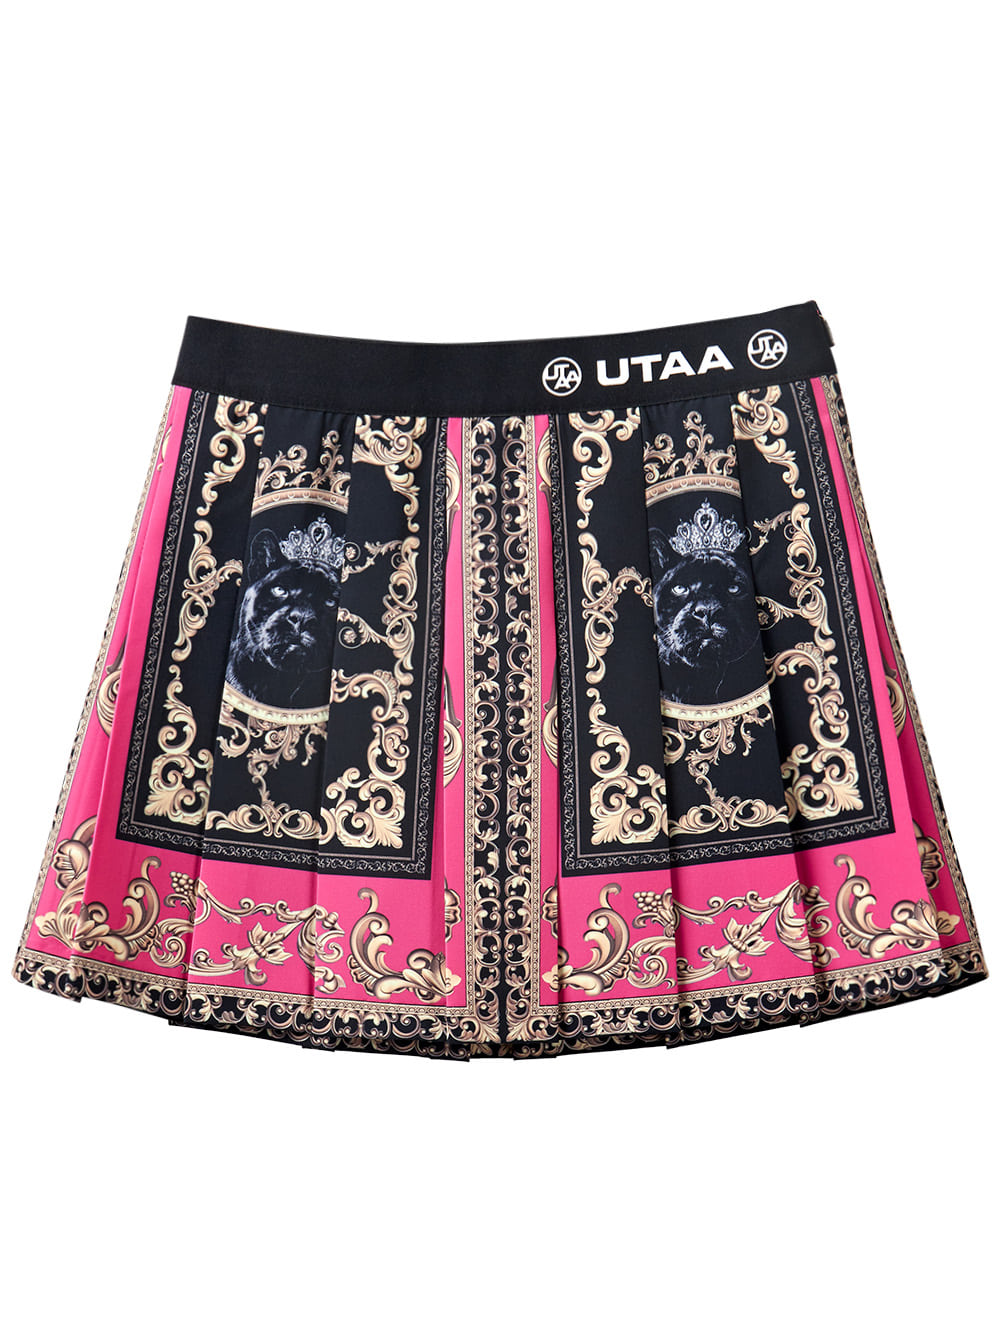 UTAA Neon Baroque Short Skirt : Pink (UB2SKF301PK)